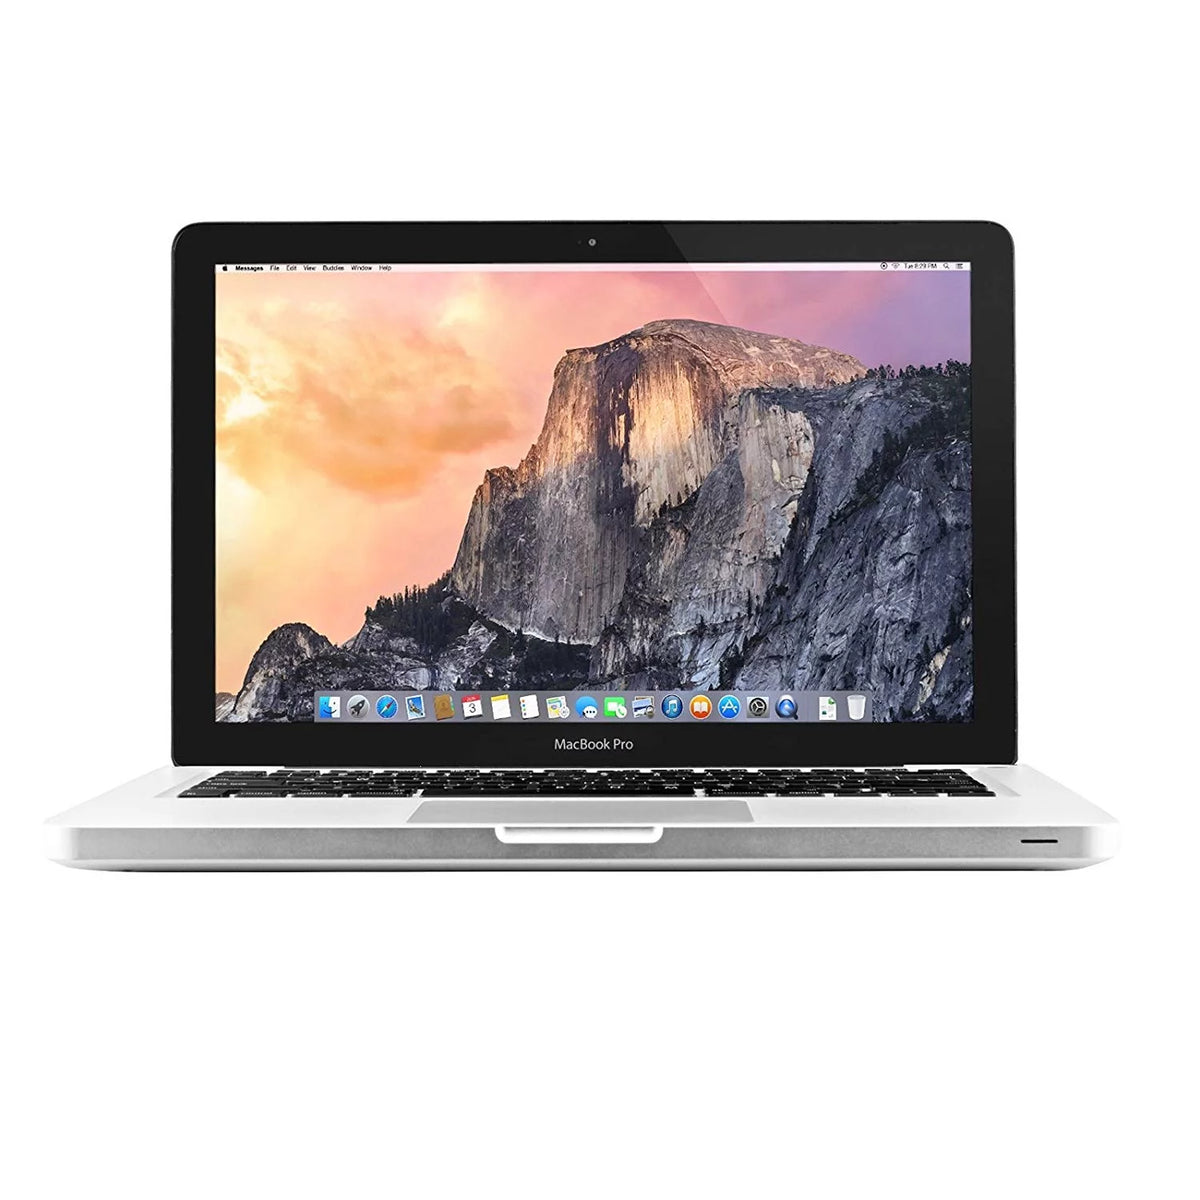 macbook pro (13-inch